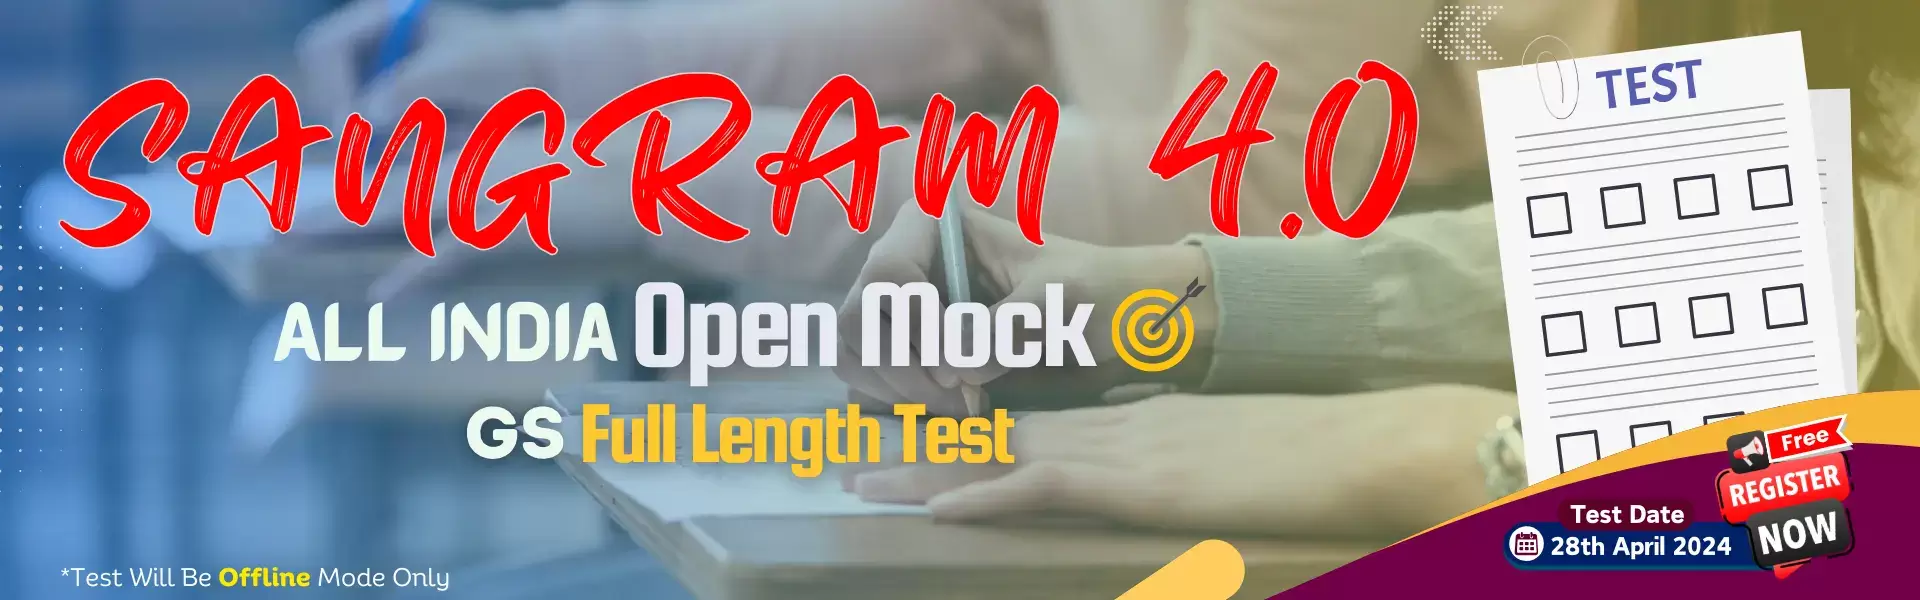 Sangram 4 - All India Open Mock Full Length Test